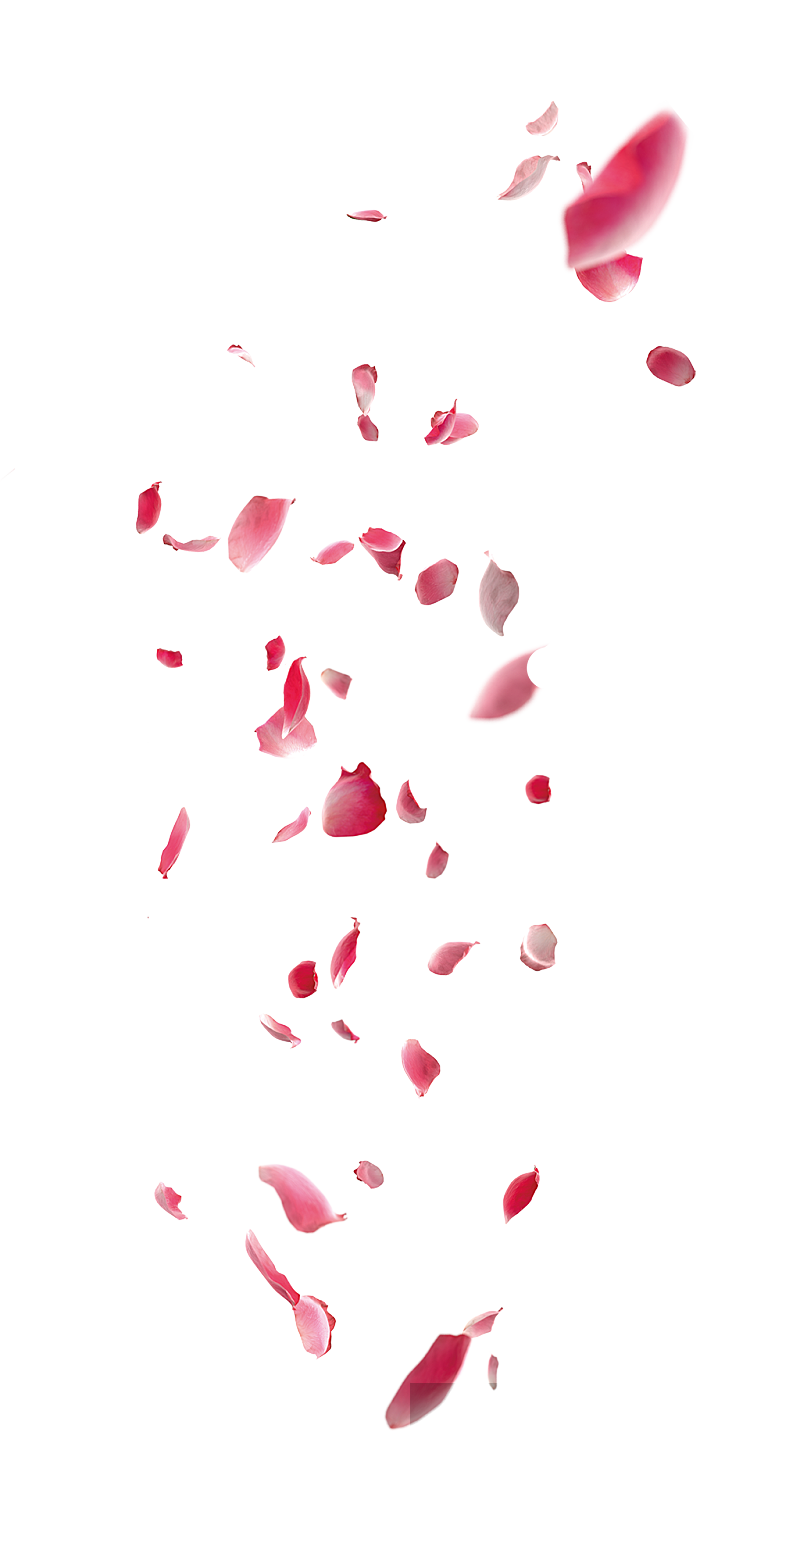 红色悬浮玫瑰花瓣素材